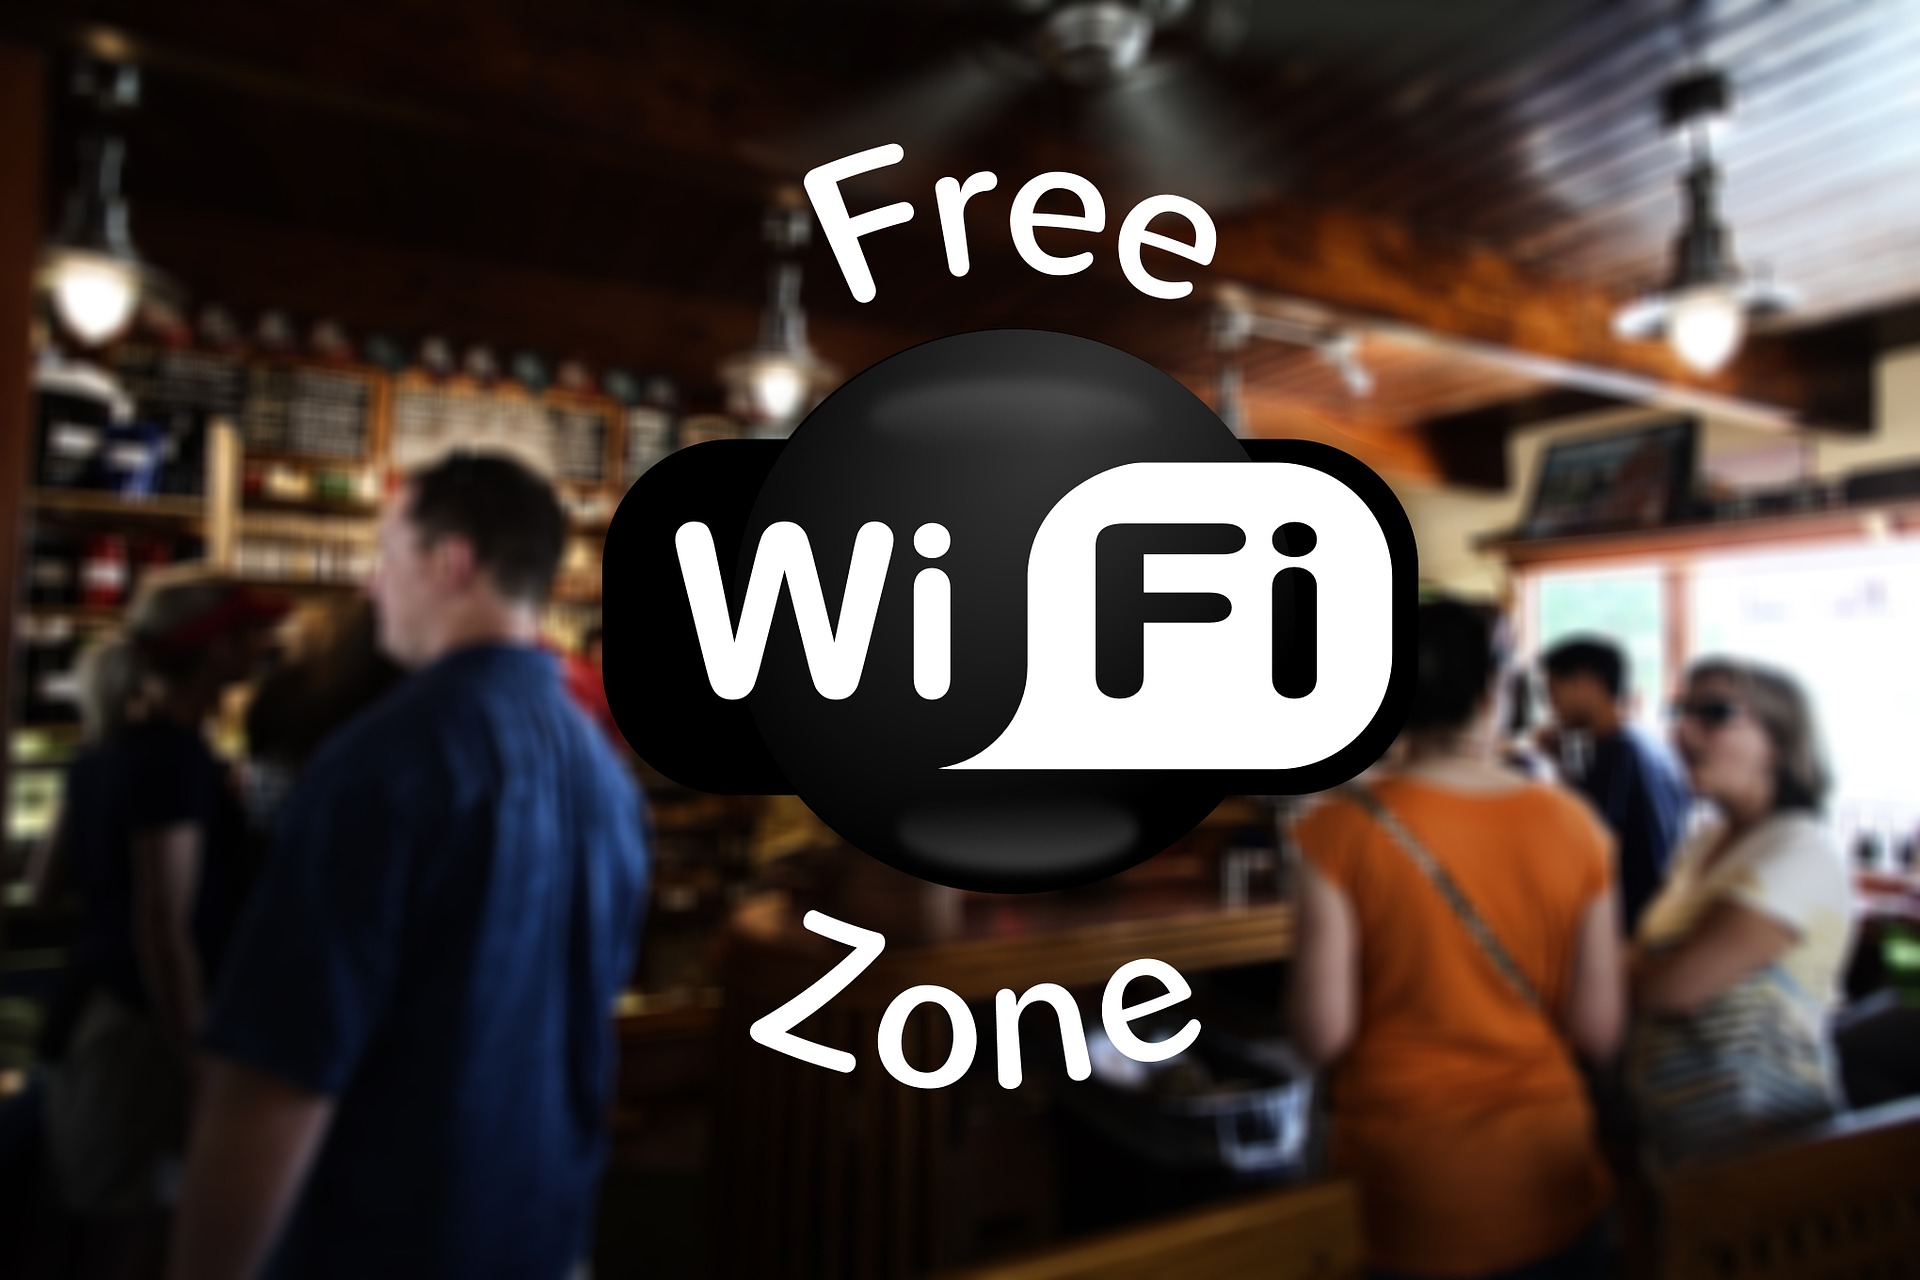 free hotel wifi zone